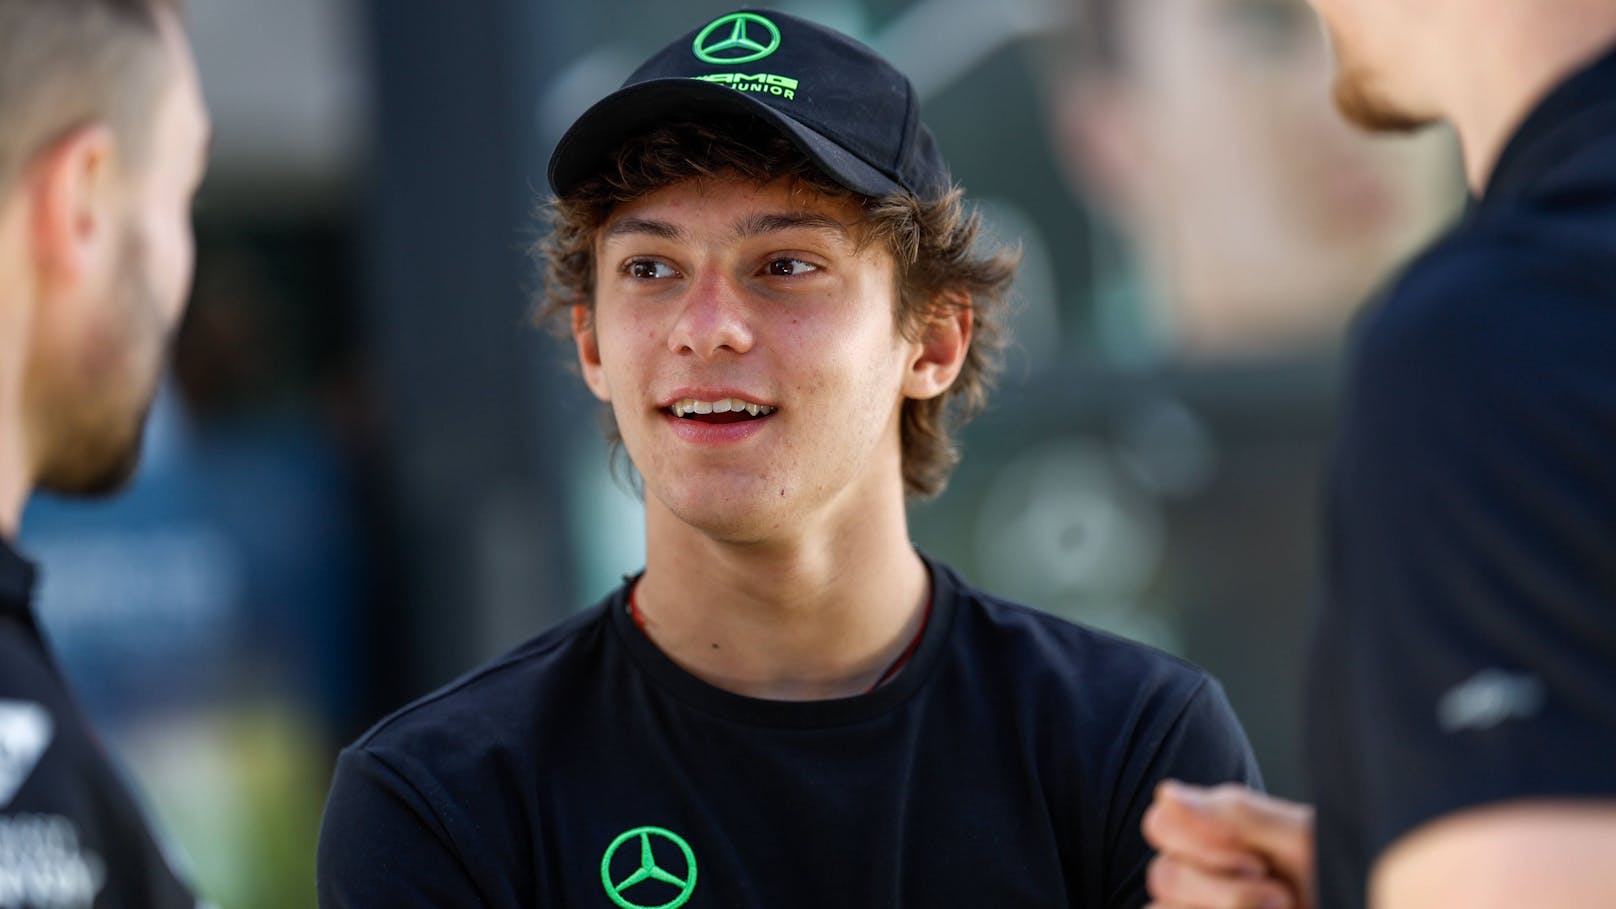 Team macht ernst: Top-Talent (17) bald in Formel 1?